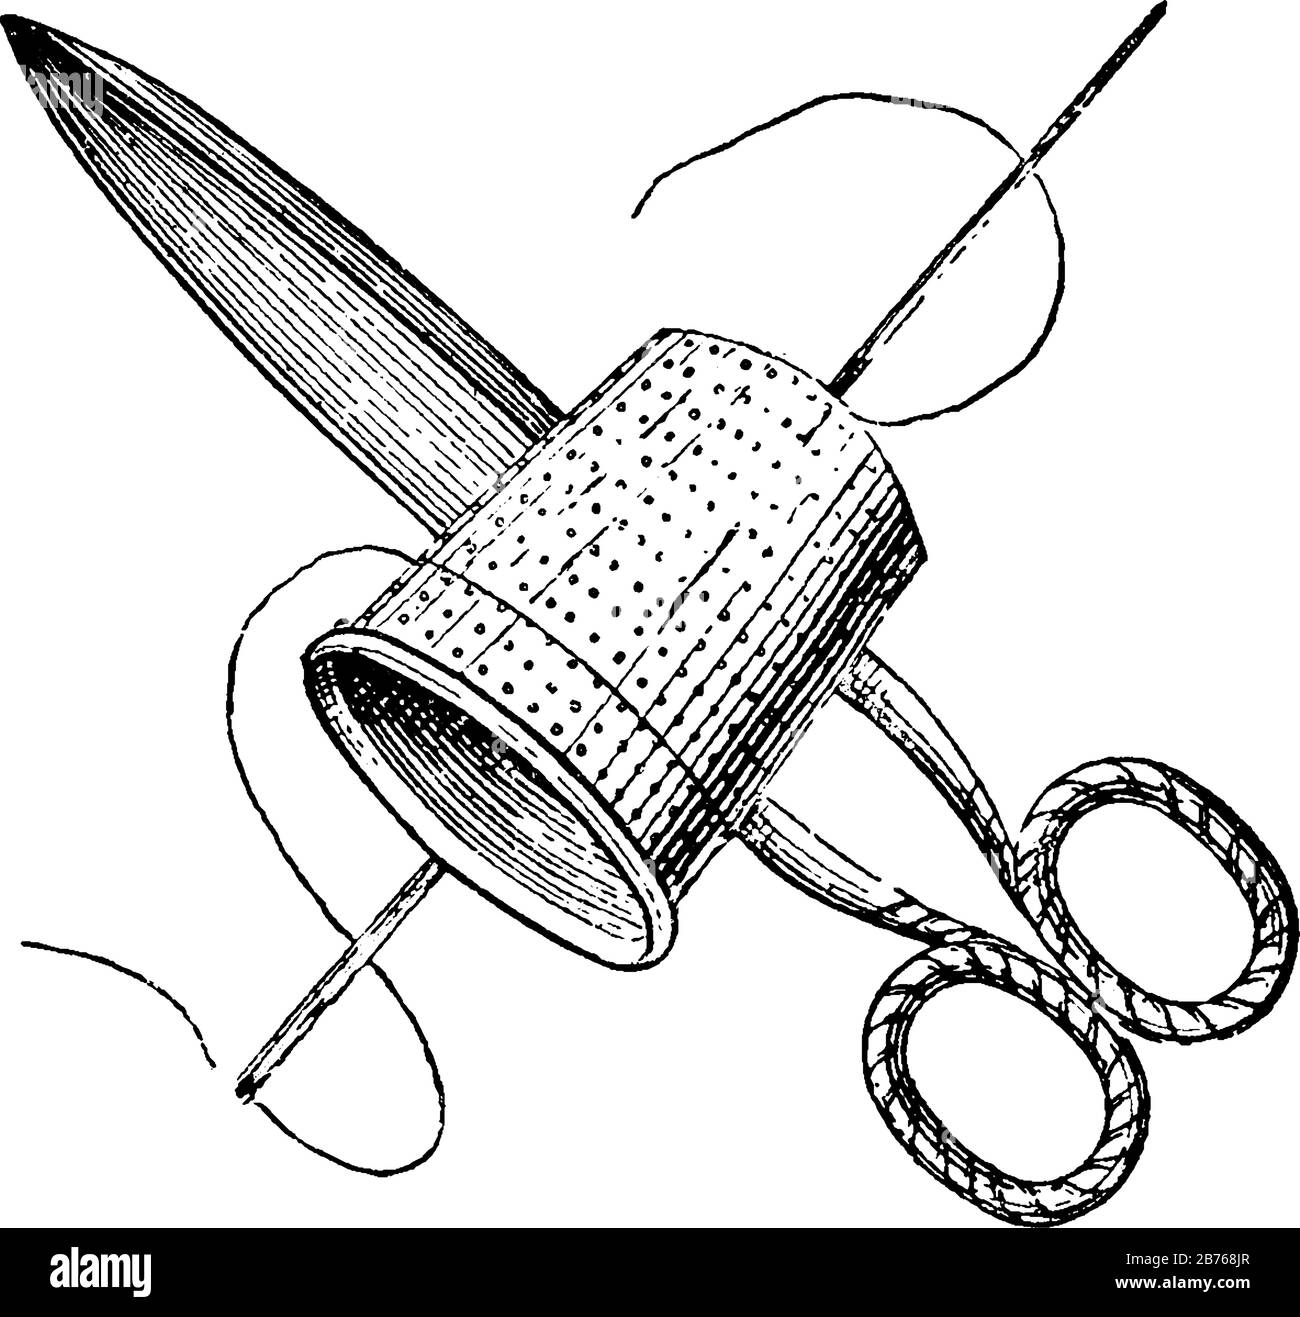 sewing thimble clip art